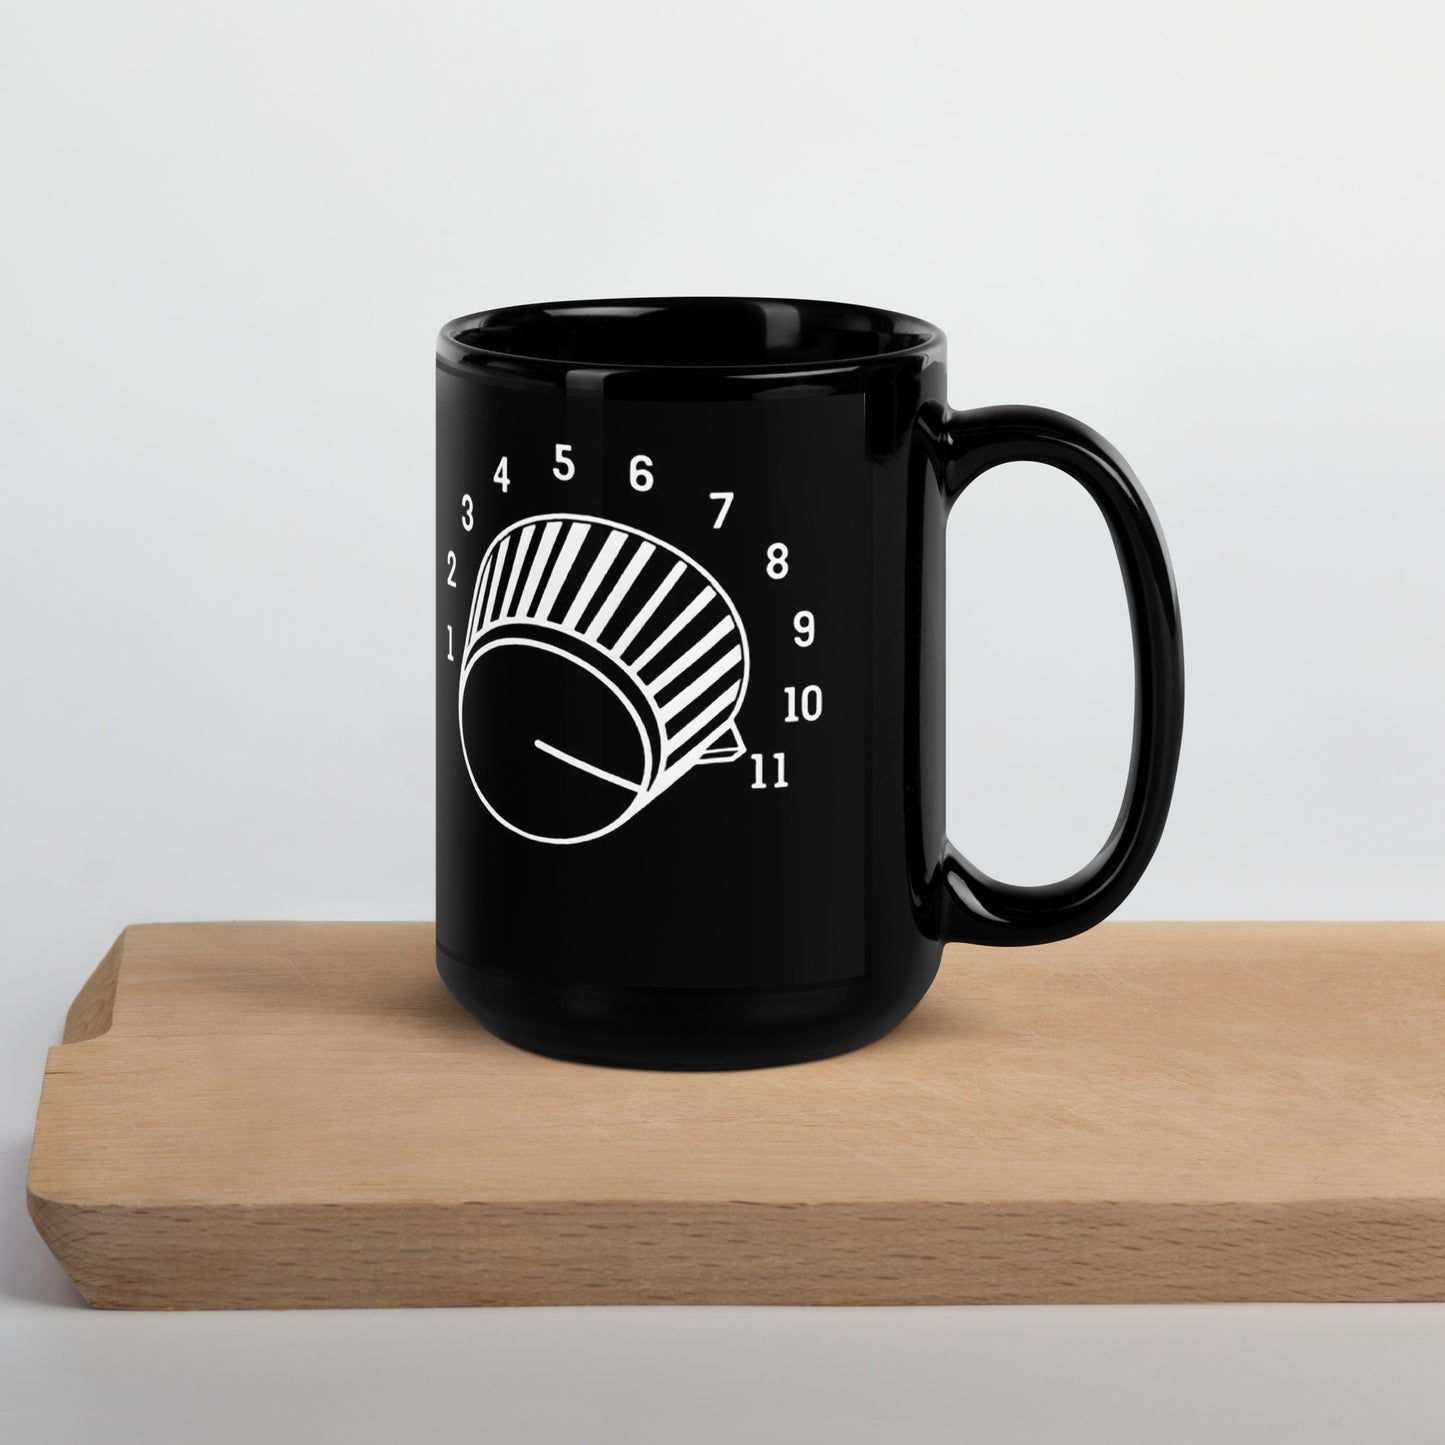 "This Goes To 11" Coffee Mug - Black